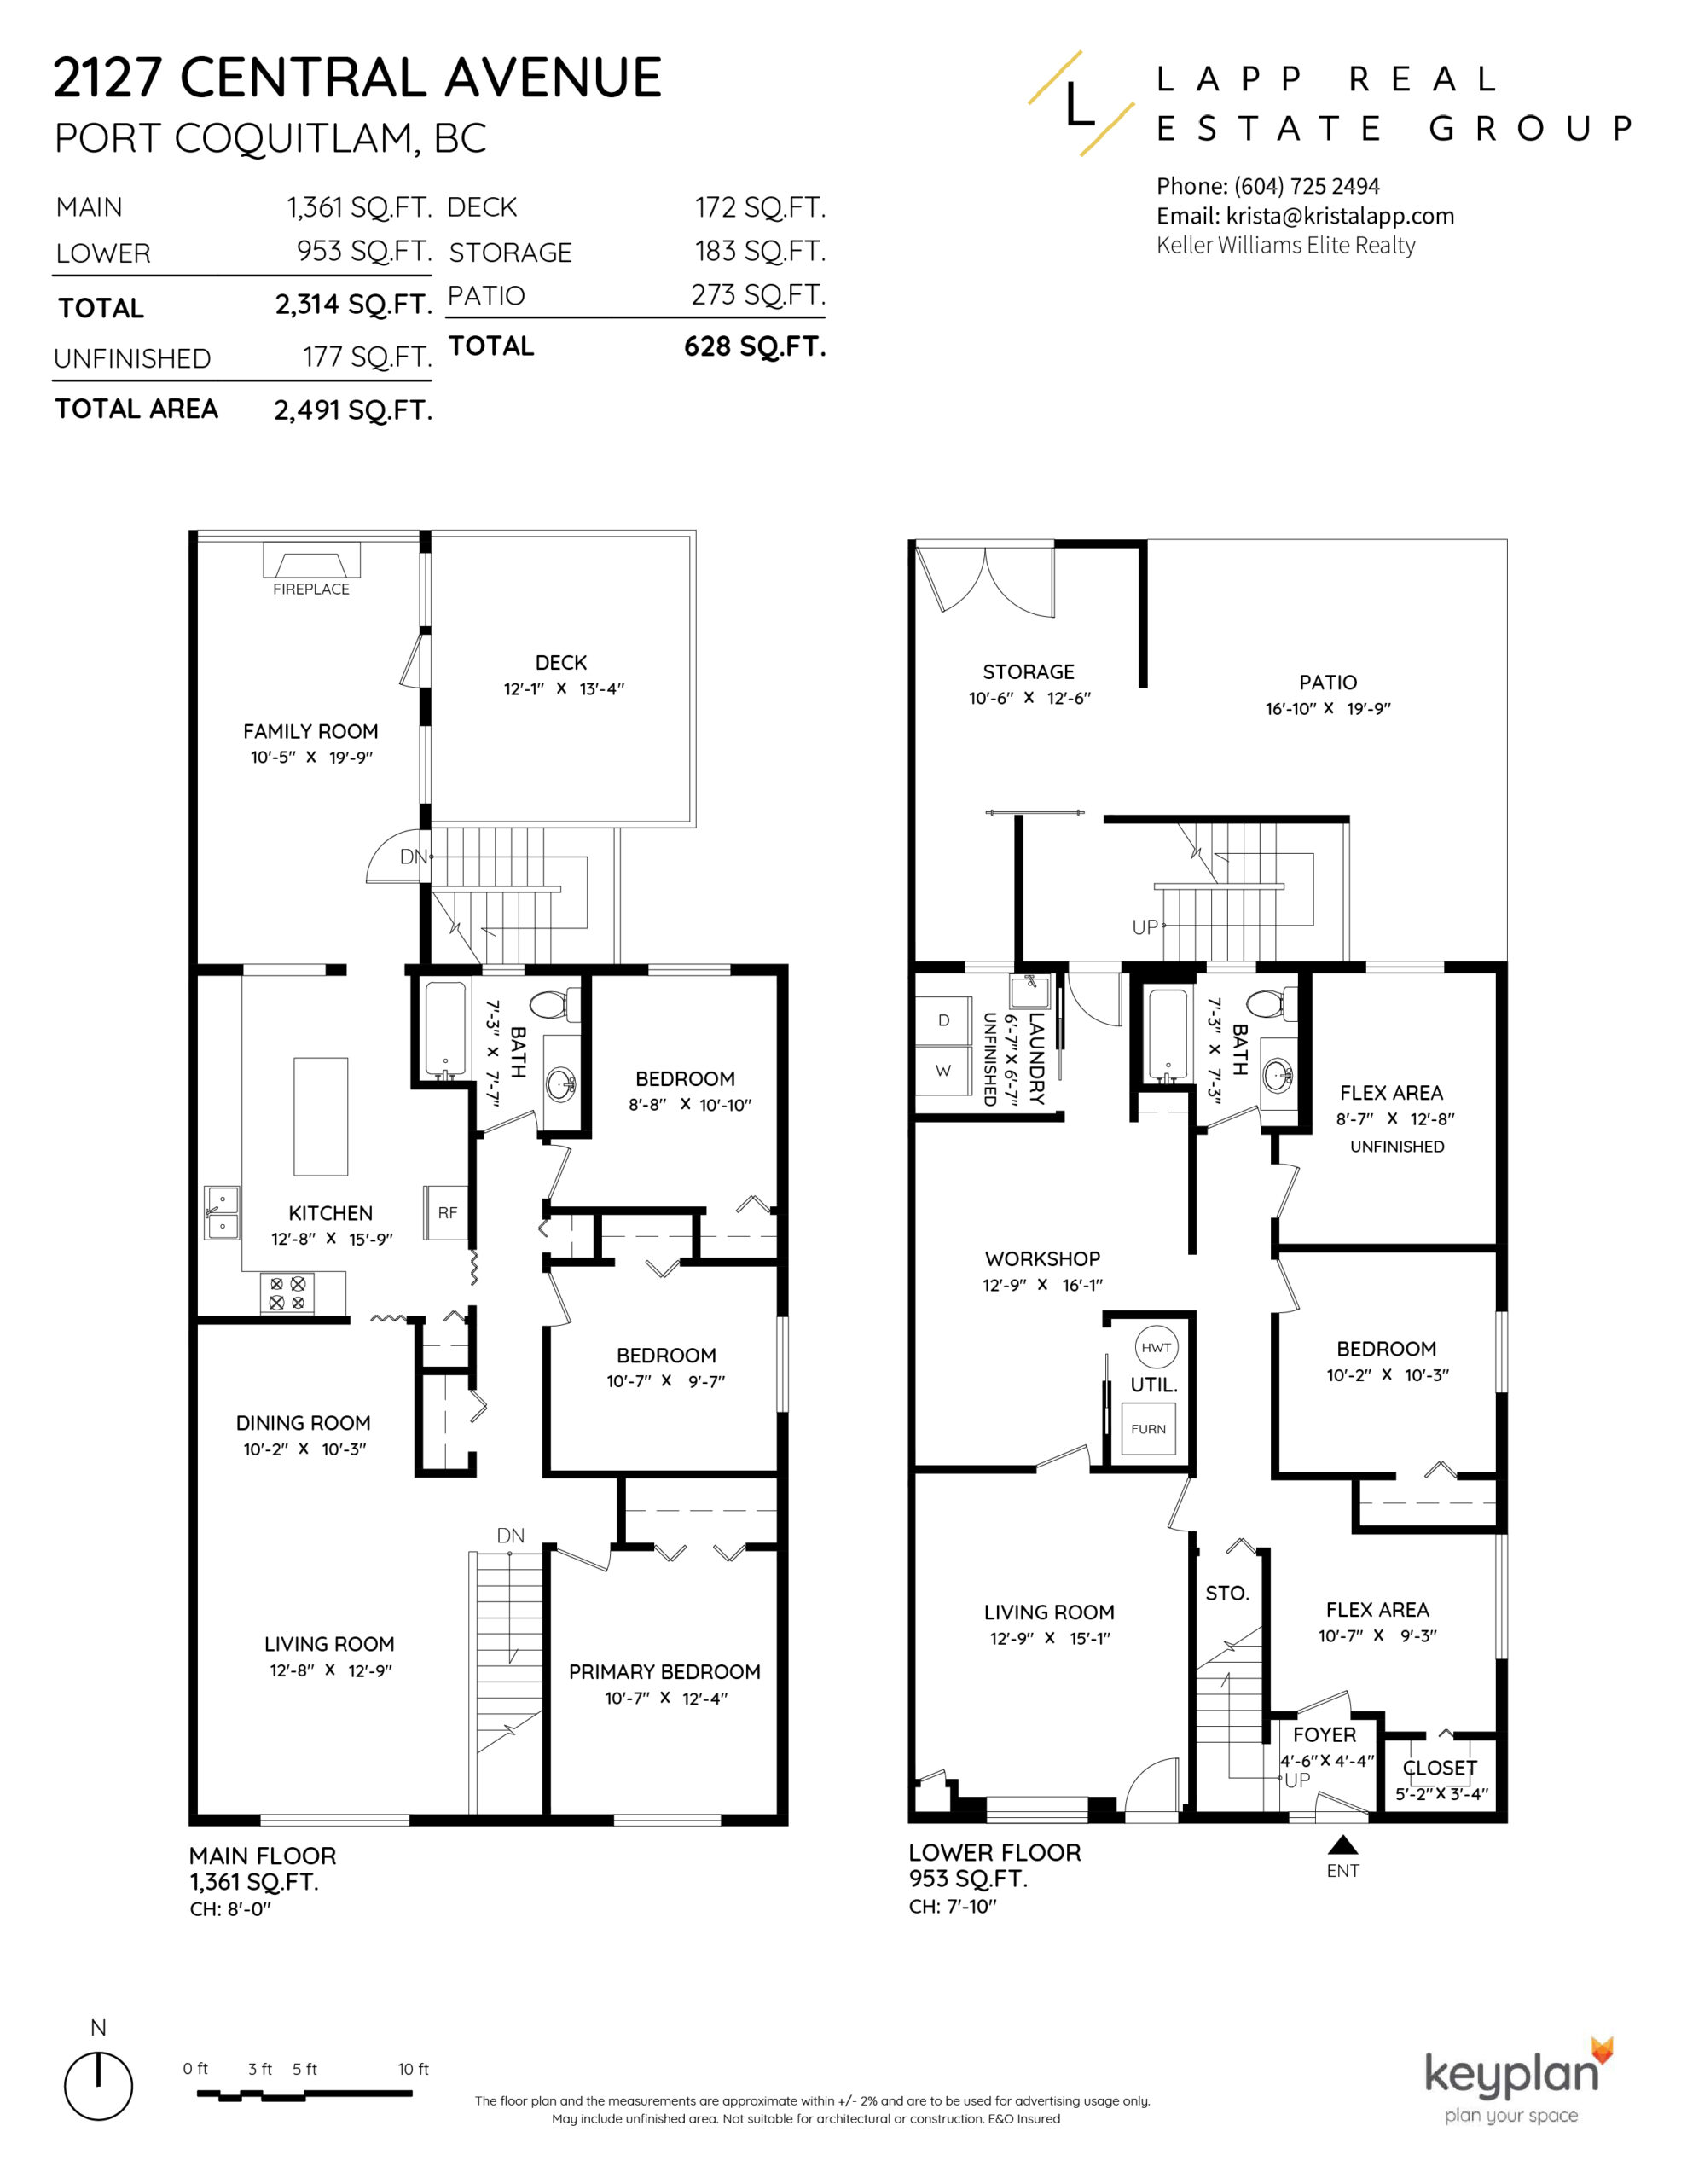 Krista Lapp 2127 Central Ave Port Coquitlam Duplex Floor Plan